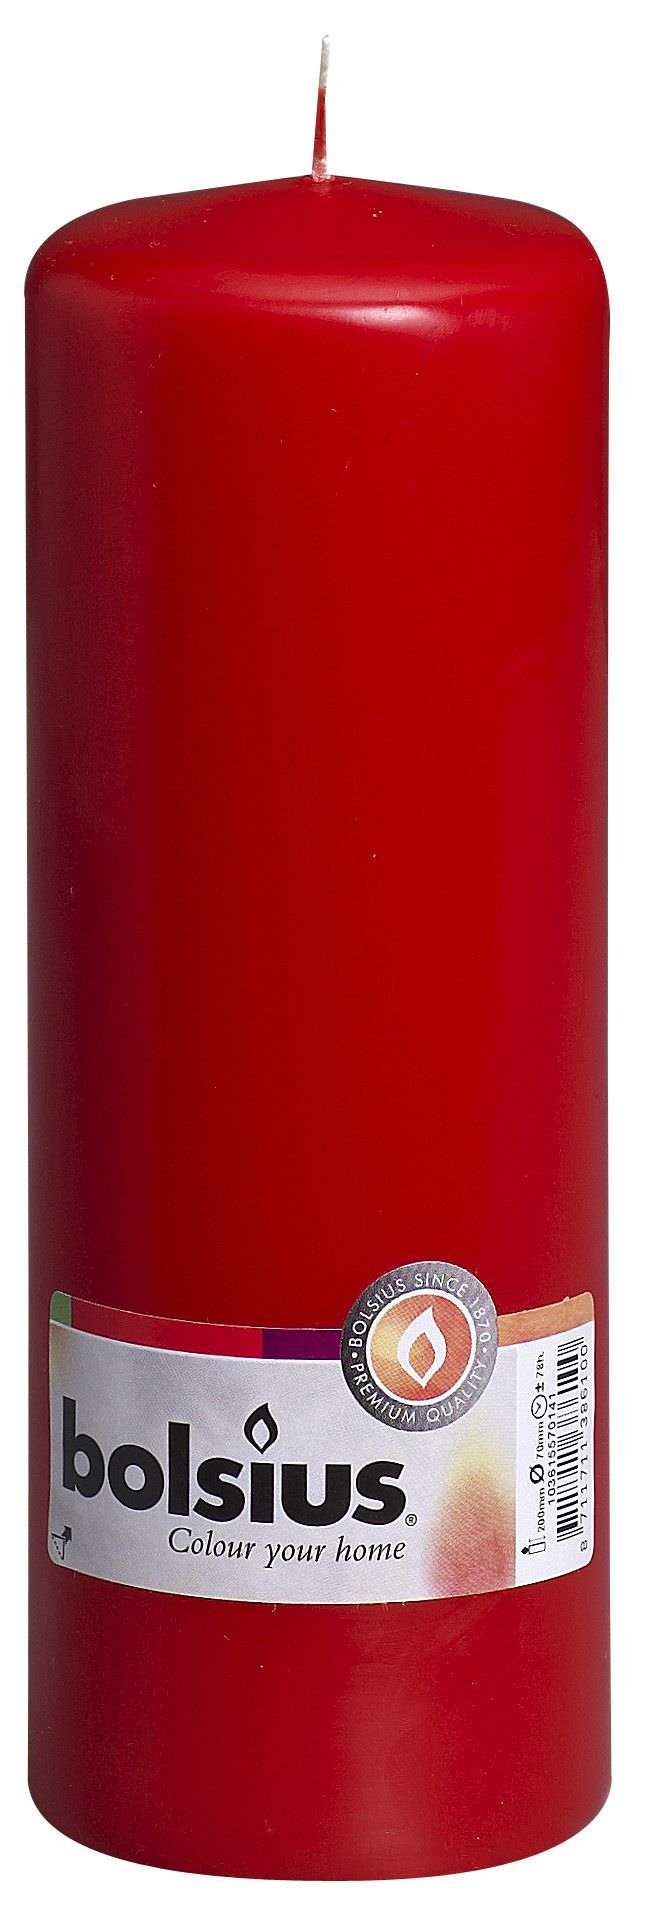 Cilindrinė žvakė, raudonos sp., 20 x 7 cm